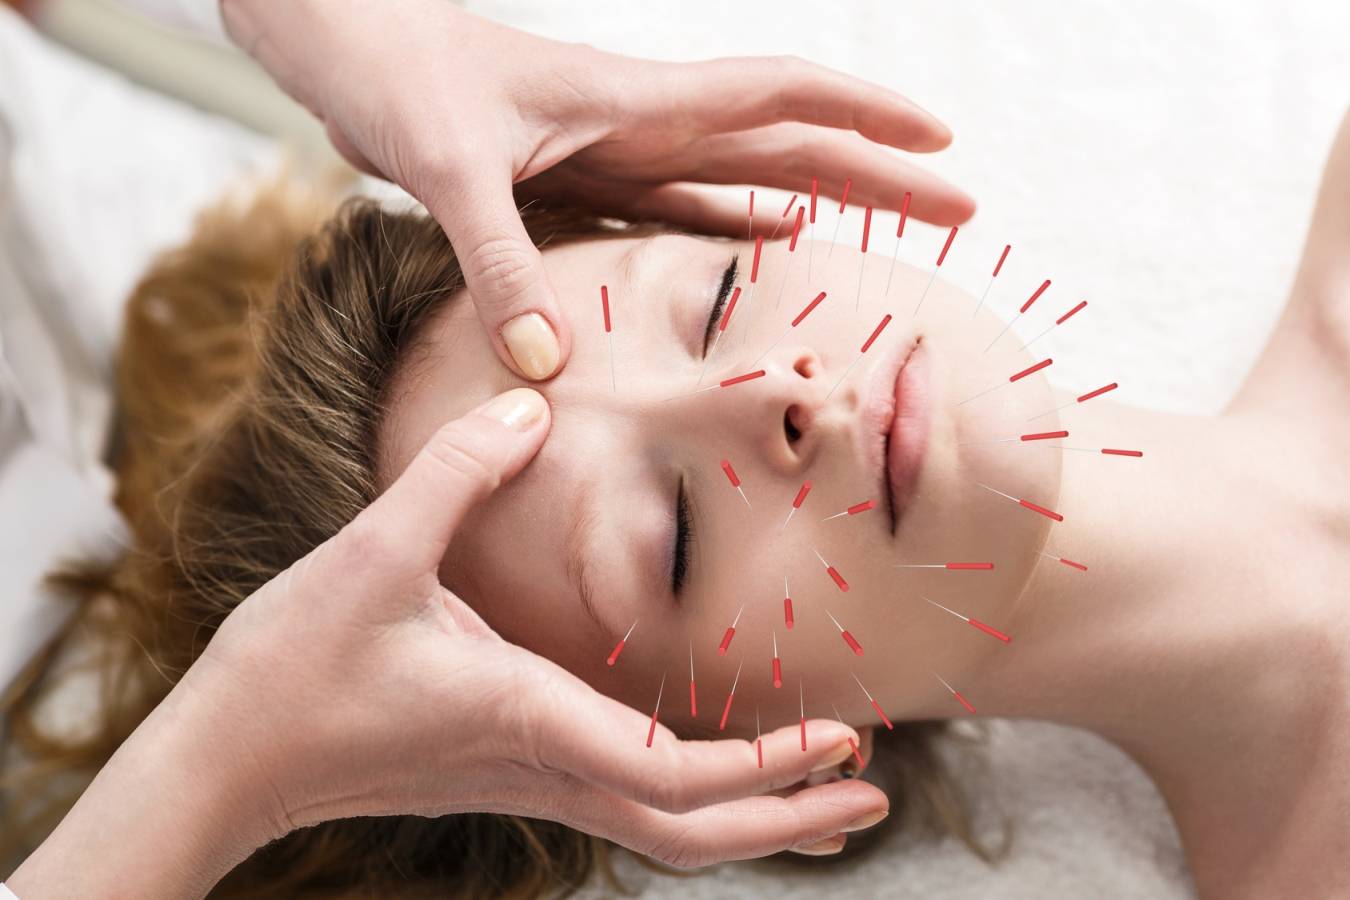 Akupunktura w leczeniu bólu głowy. Jakie są przyczyny bólu głowy wg medycyny chińskiej? Zbliżenie na twarz kobiety z wbitymi w nią igłami akupunkturowymi.